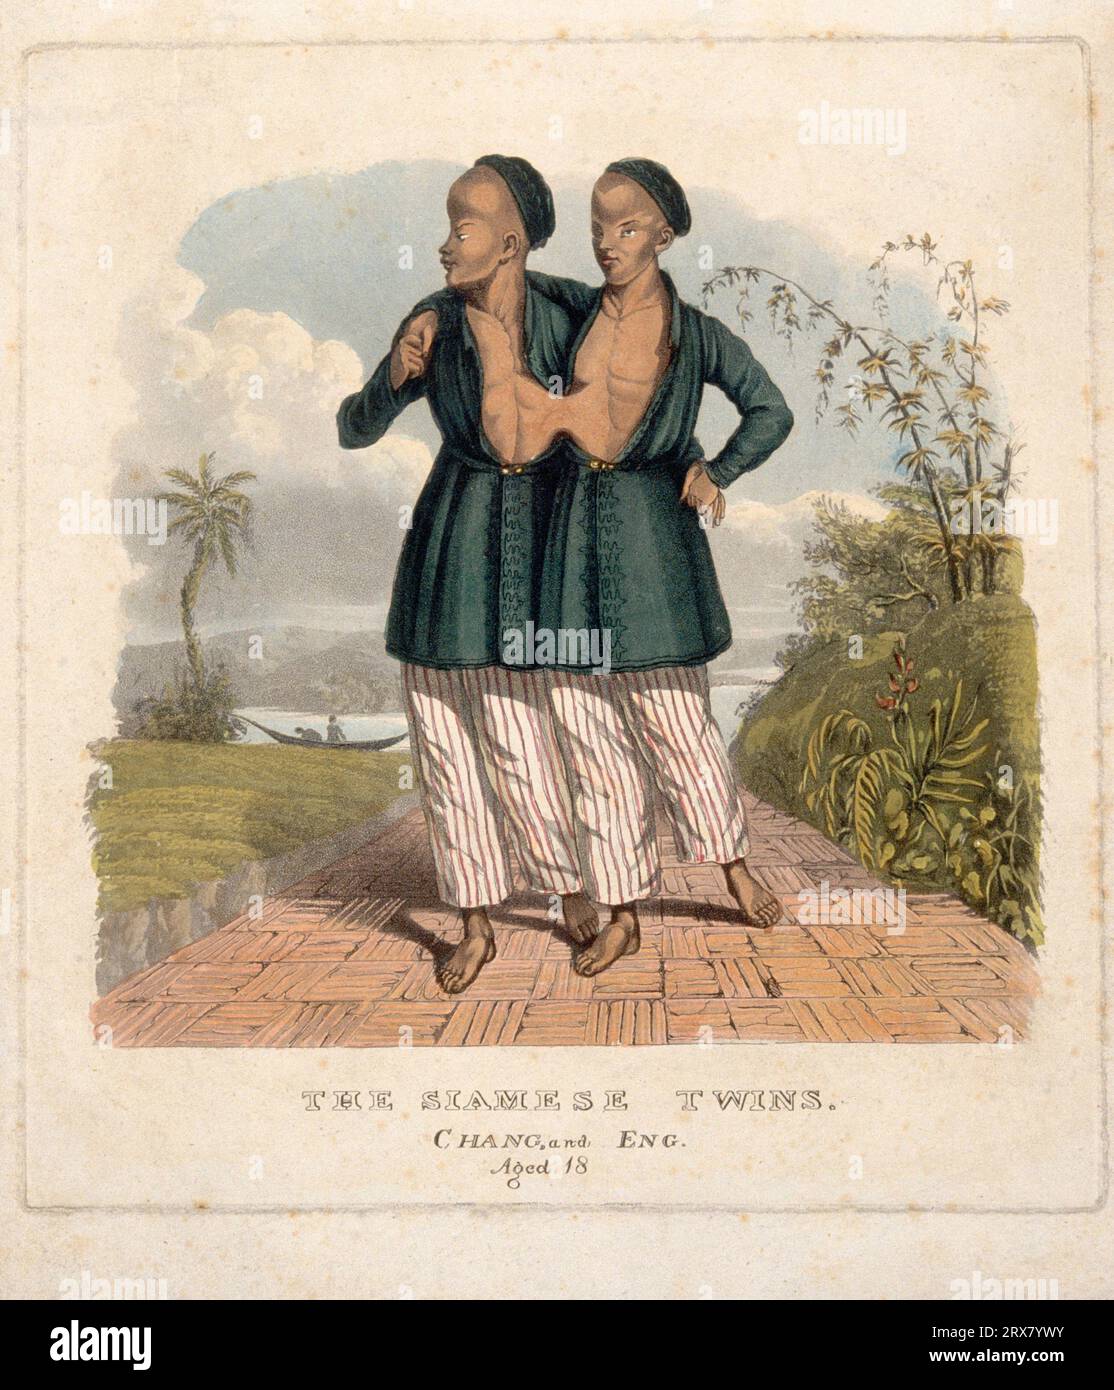 Chang und eng die siamesischen Zwillinge, 1811 – 1874, 18 Jahre alt in einer orientalischen Landschaft, farbiges Aquatint Stockfoto